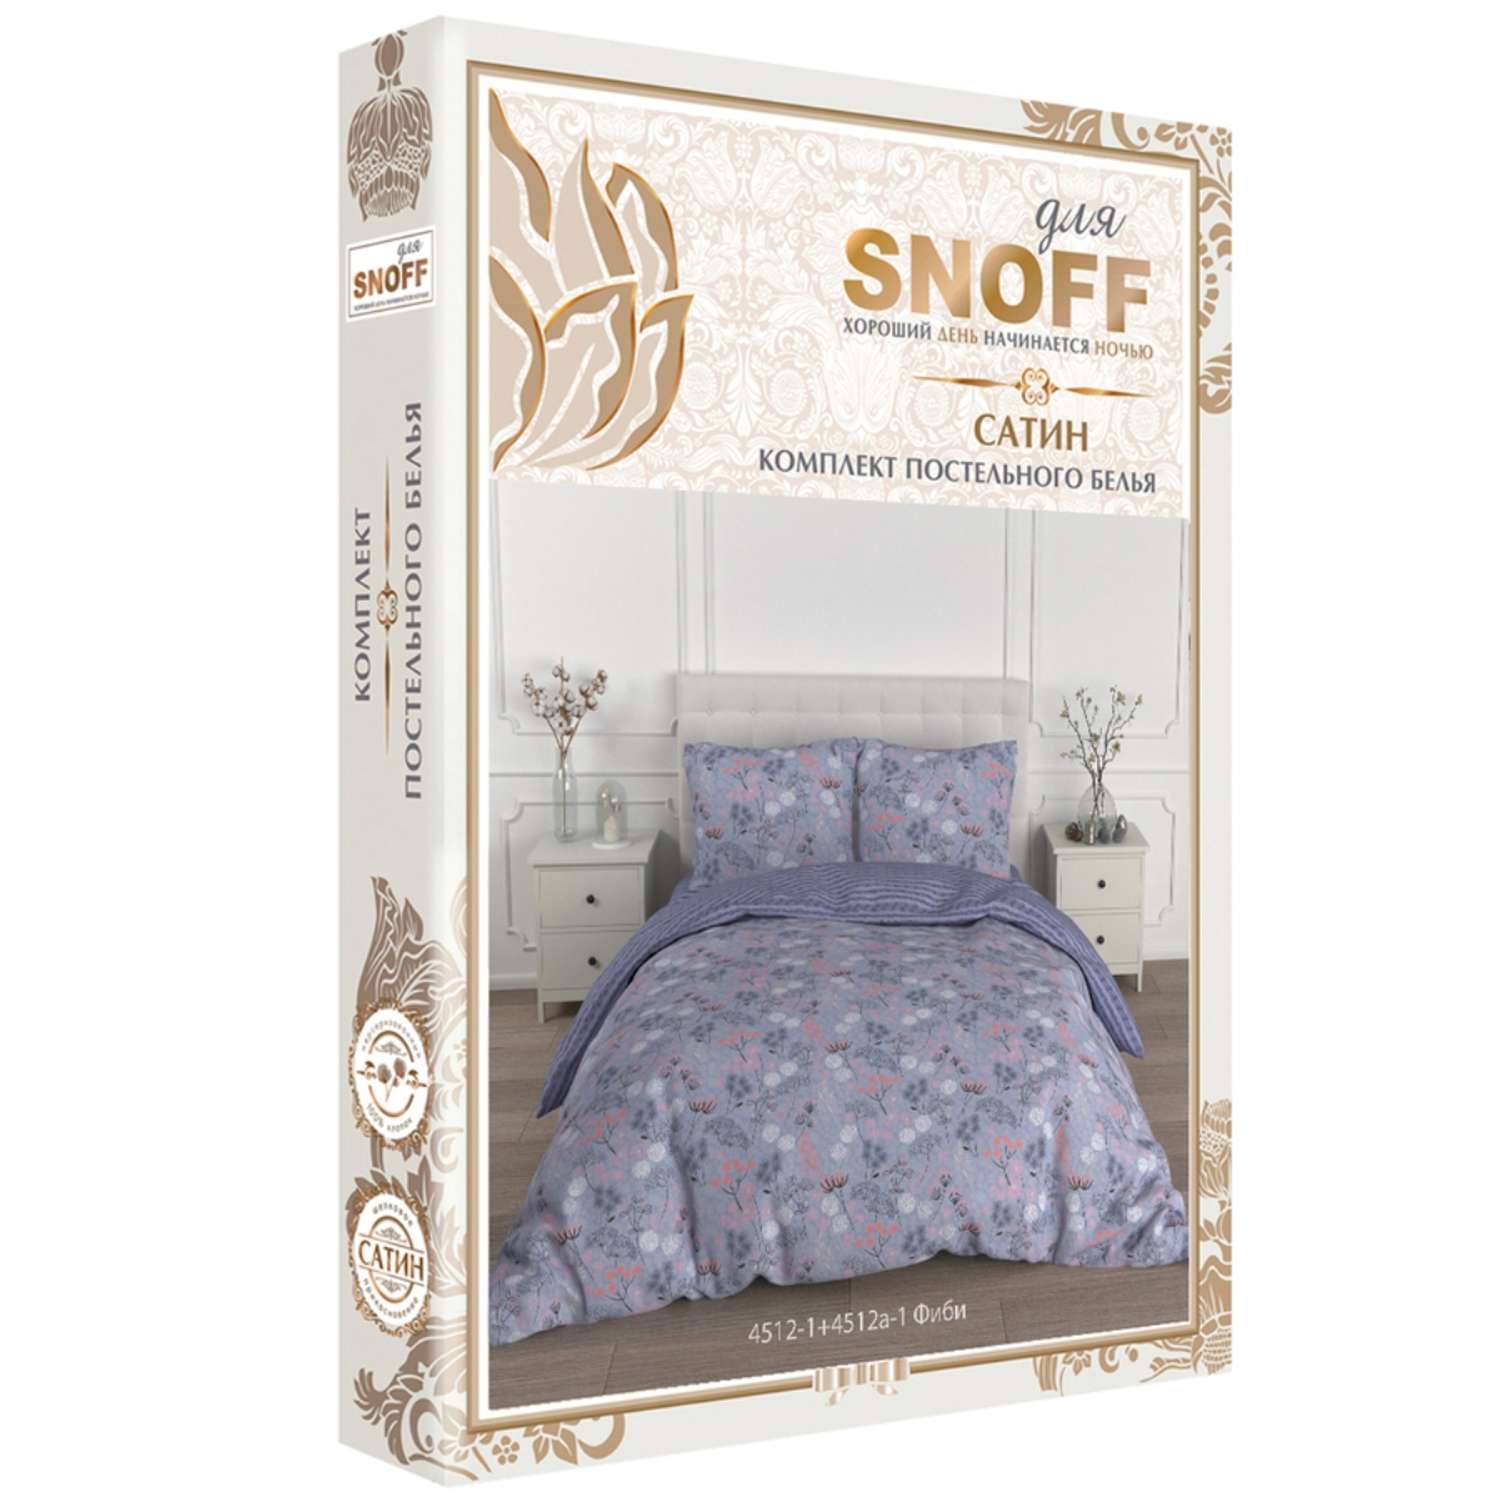 Комплект постельного белья для SNOFF Фиби 1.5спальный сатин - фото 4